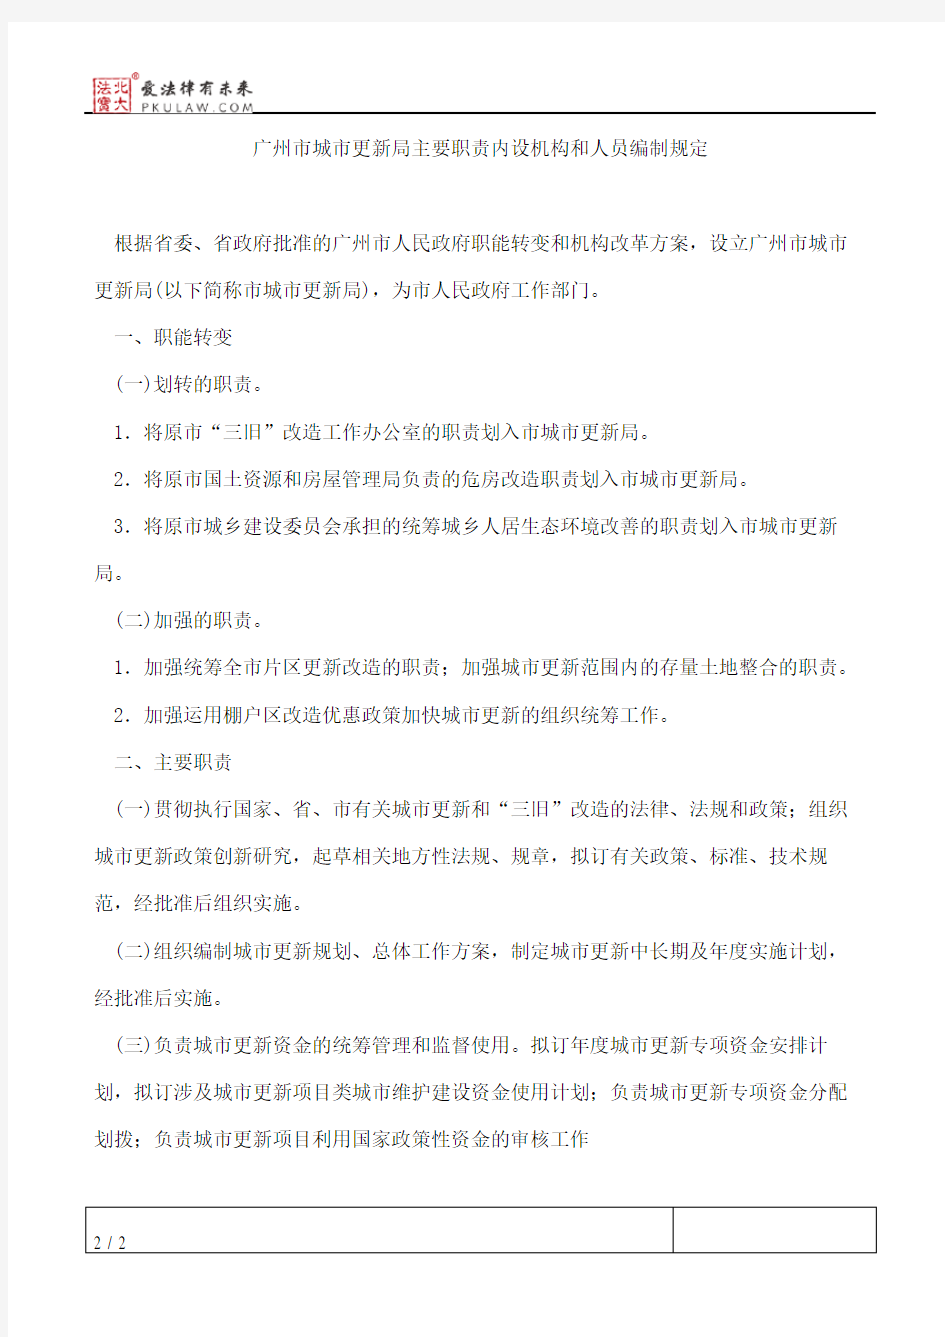 广州市人民政府办公厅关于印发广州市城市更新局主要职责内设机构